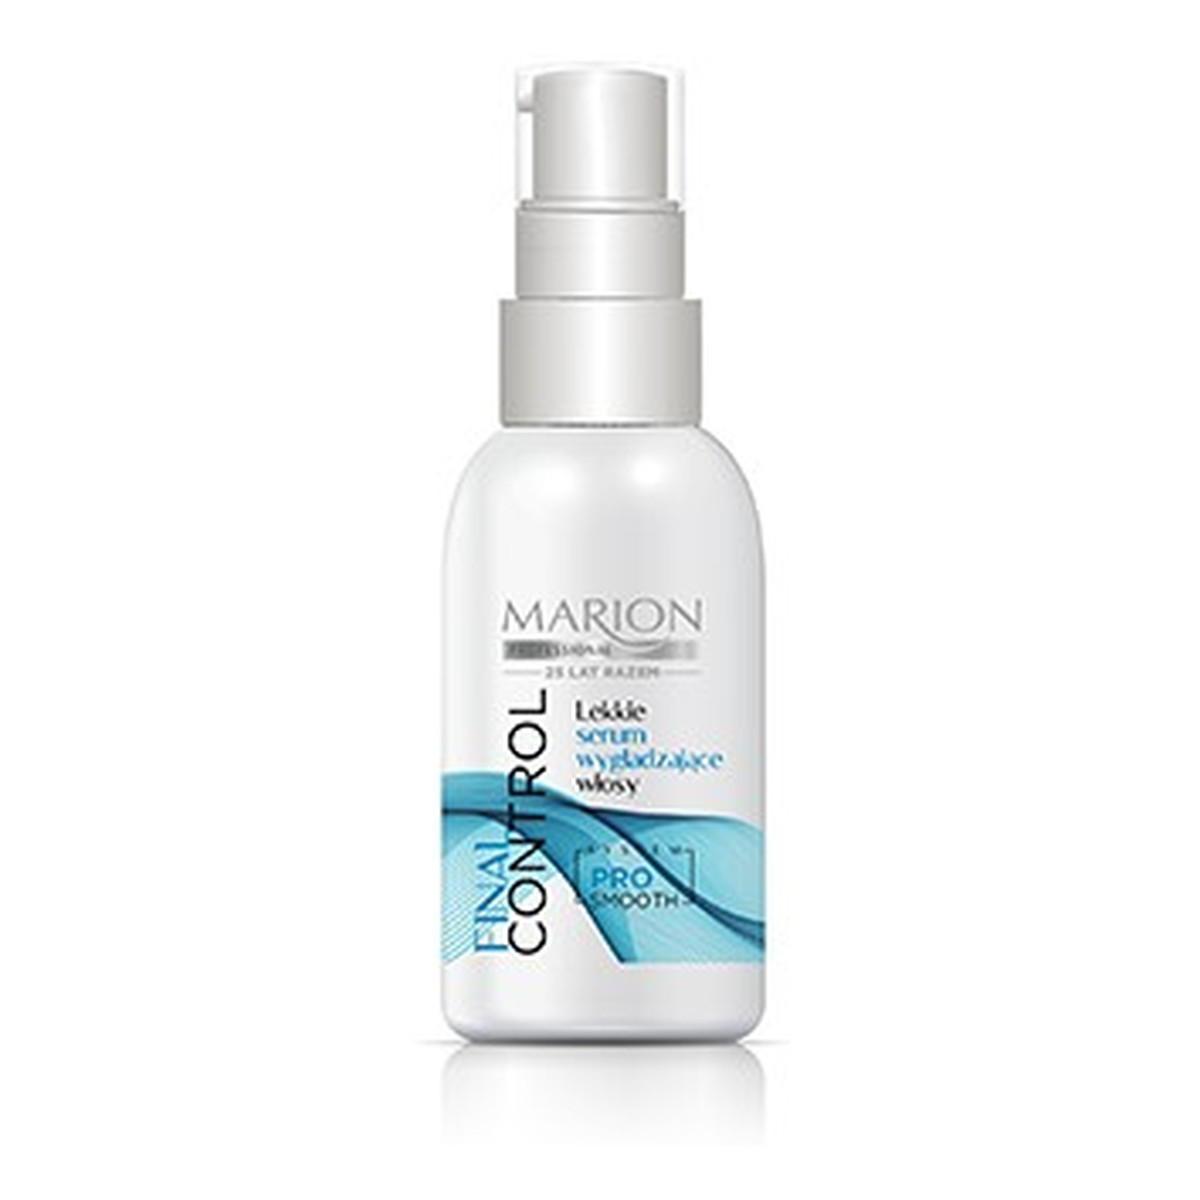 Marion Final Control lekkie serum wygładzające włosy 50ml